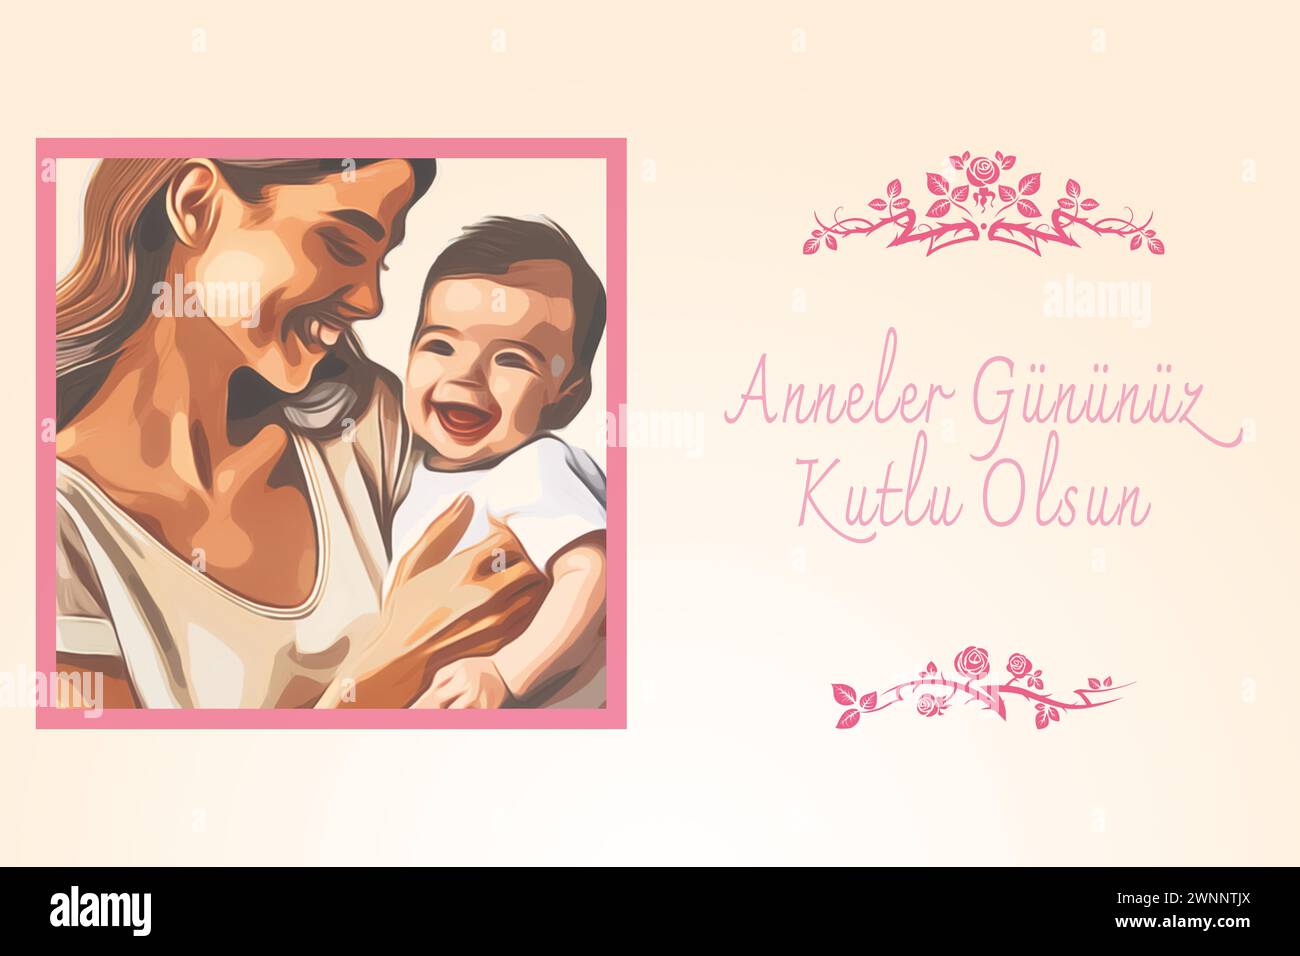 Anneler Gununuz Kutlu olsun o felice festa della mamma a tutte le madri. Bambino con madre. Illustrazione vettoriale Illustrazione Vettoriale